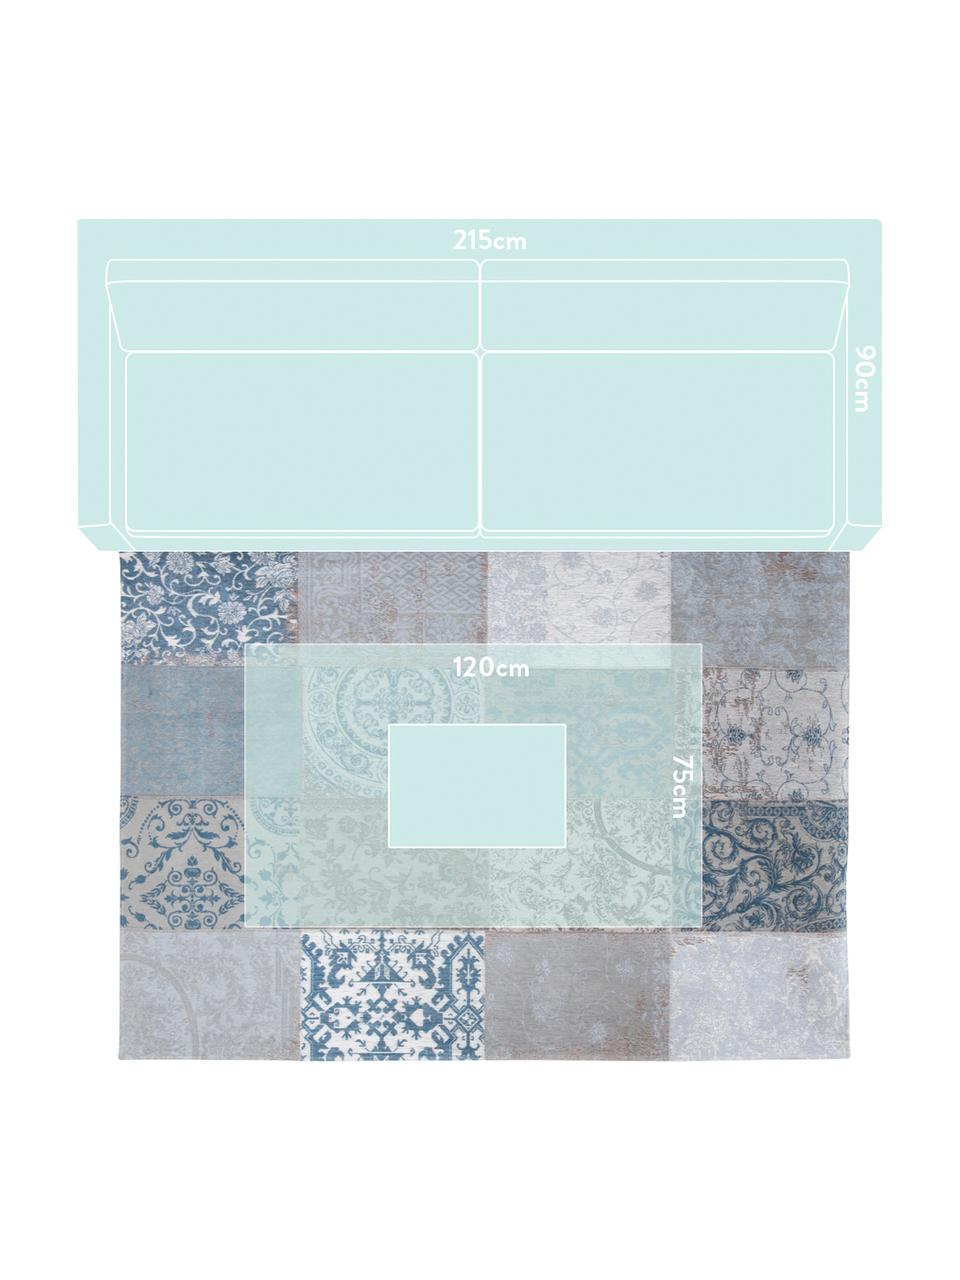 Žinylkový koberec s patchworkovým vzorem Multi, Modrá, šedá